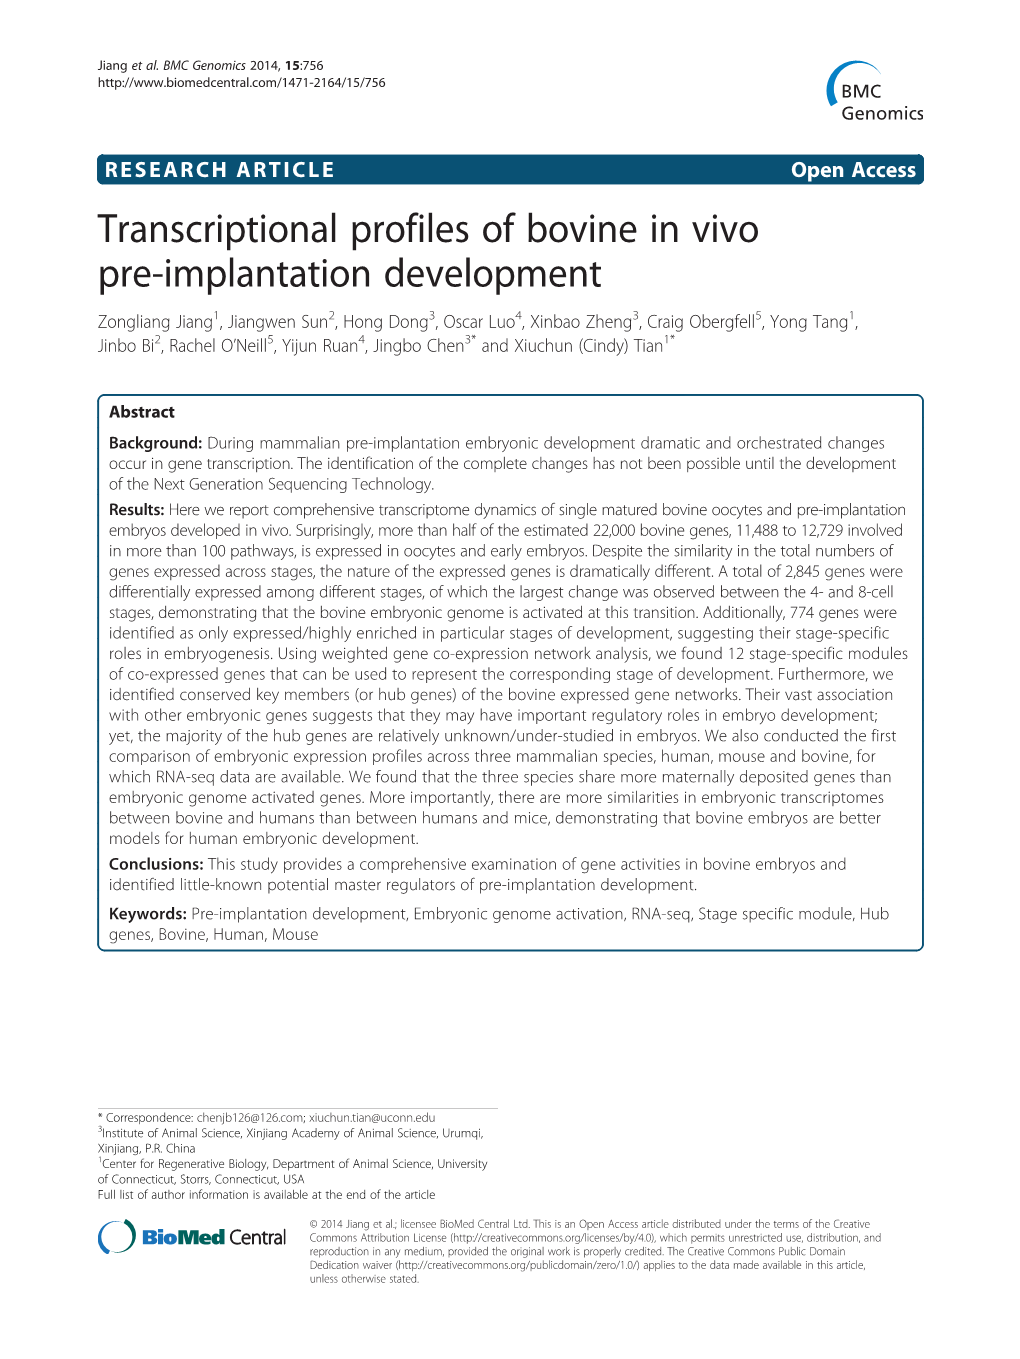 Transcriptional Profiles of Bovine in Vivo Pre-Implantation